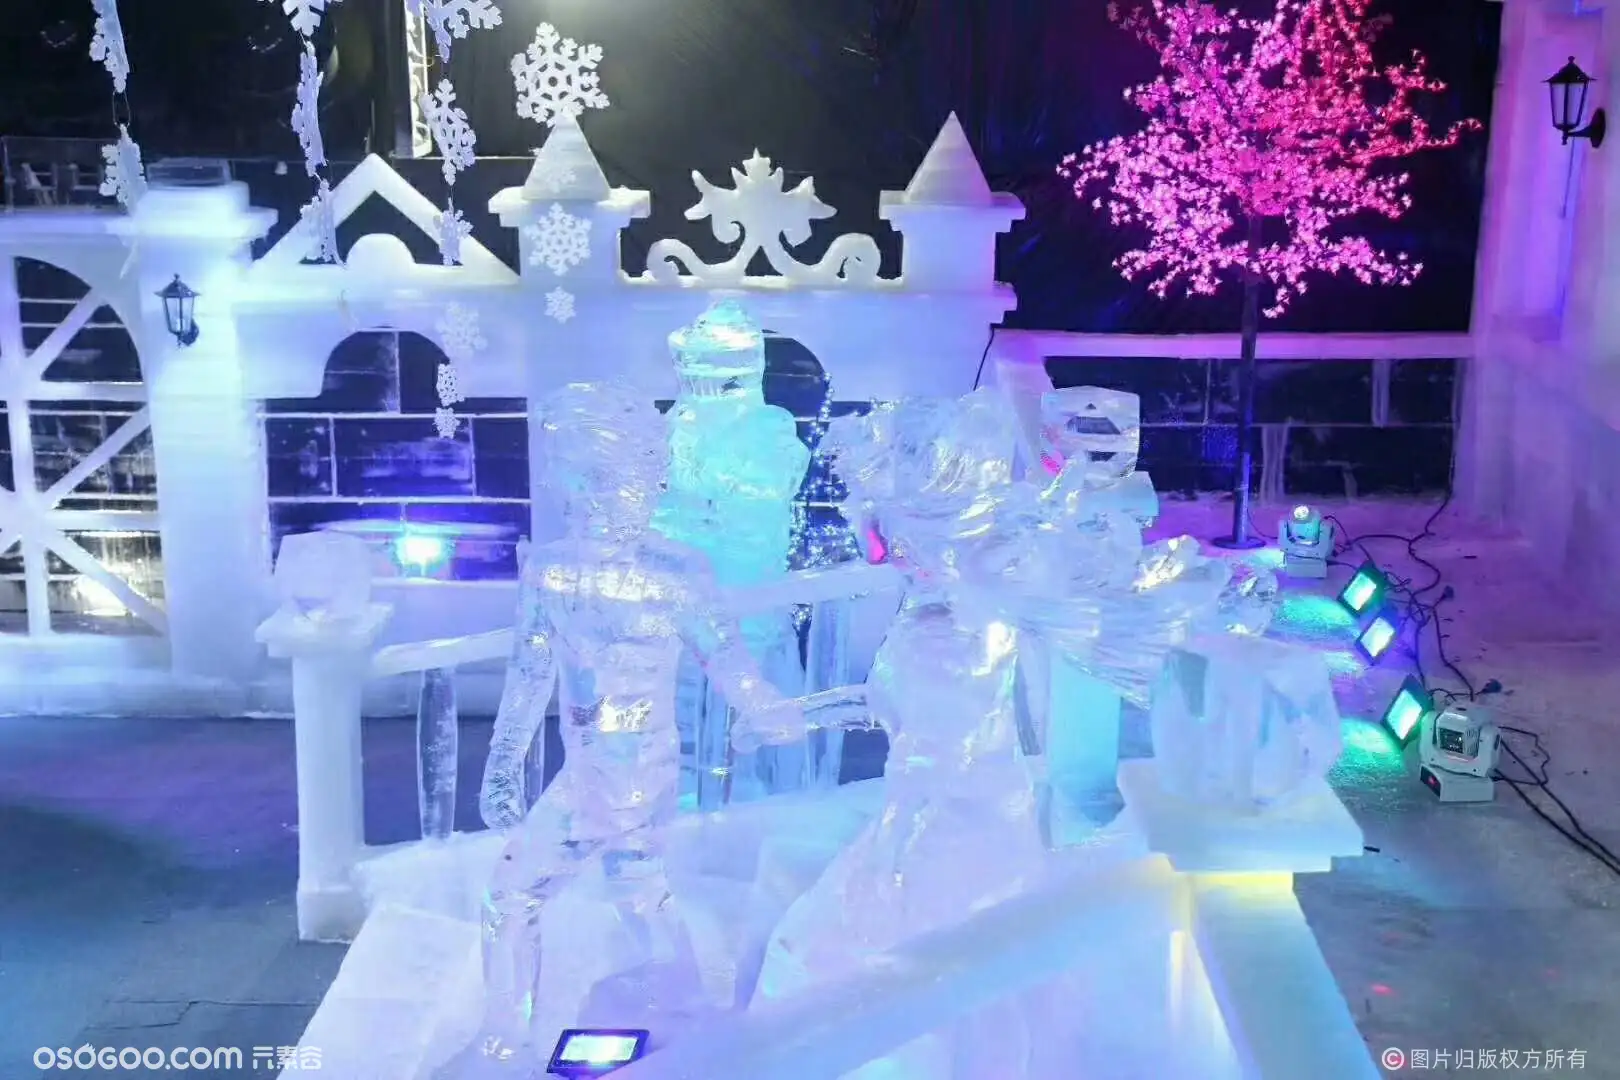 [哈油要闻]艺术学院雪雕作品《乘风破浪》获中国哈尔滨国际大学生冰雕雪雕大赛一等奖-哈尔滨石油学院